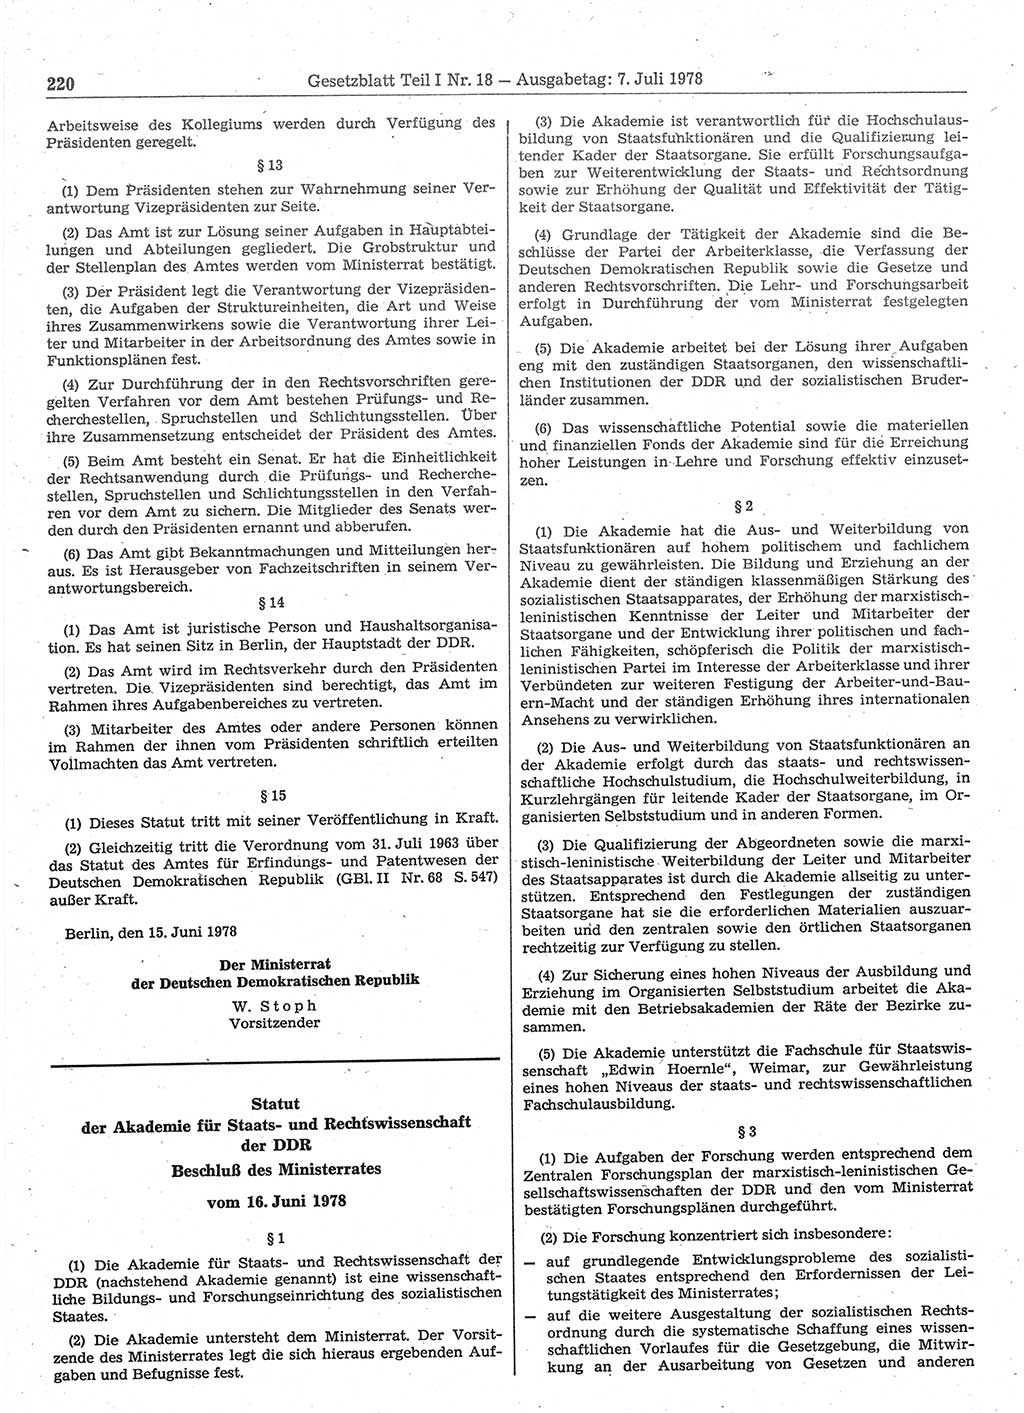 Gesetzblatt (GBl.) der Deutschen Demokratischen Republik (DDR) Teil Ⅰ 1978, Seite 220 (GBl. DDR Ⅰ 1978, S. 220)